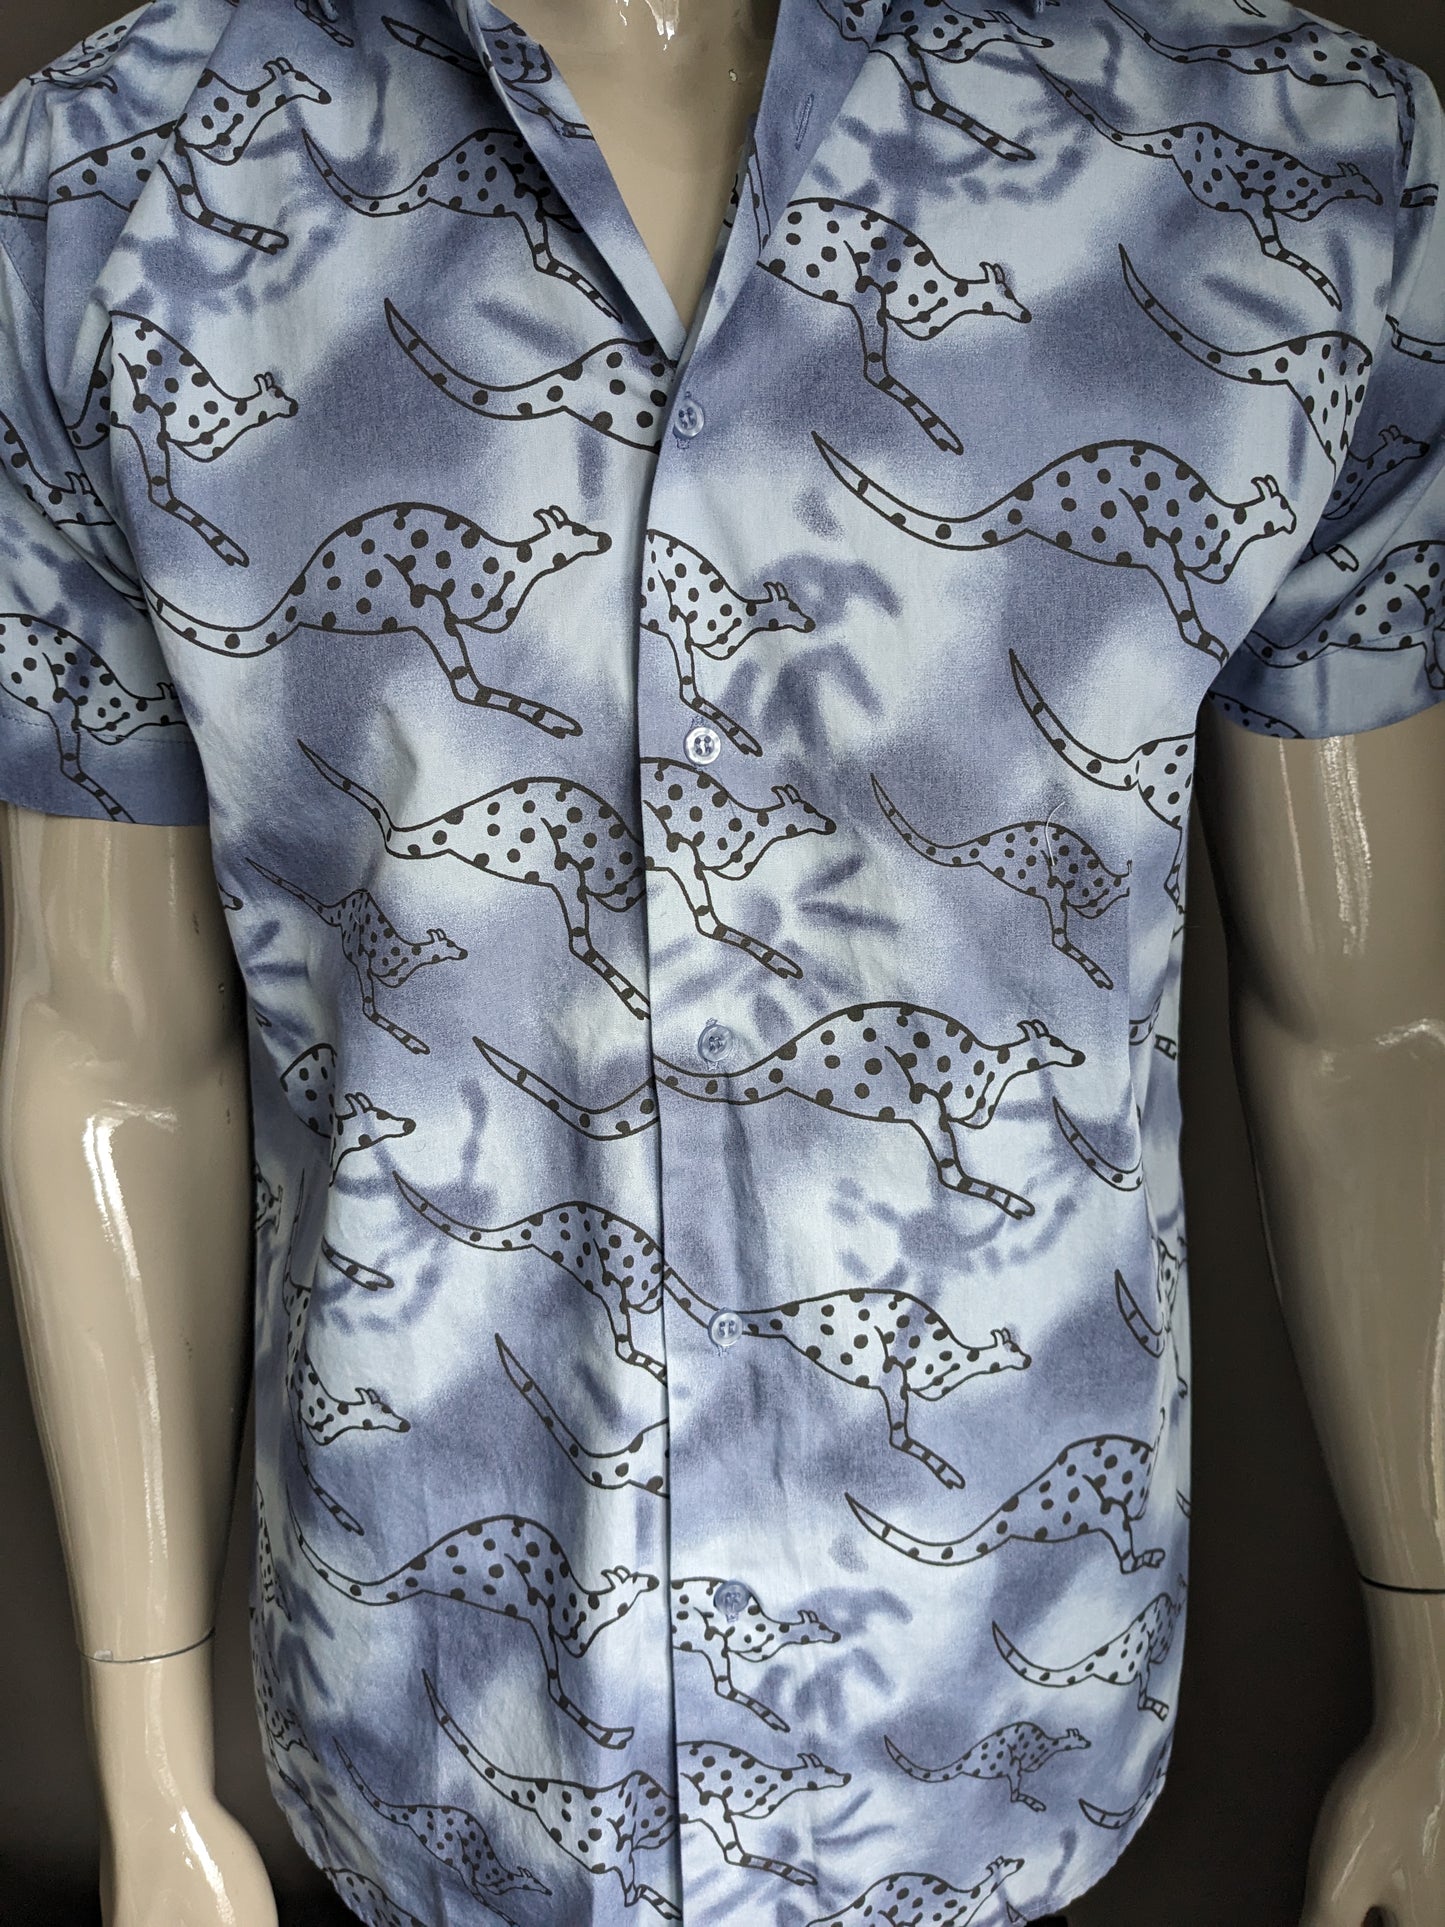 Vintage identisches Hemd Kurzarm. Blue Black Kangaroo Print. Größe M.